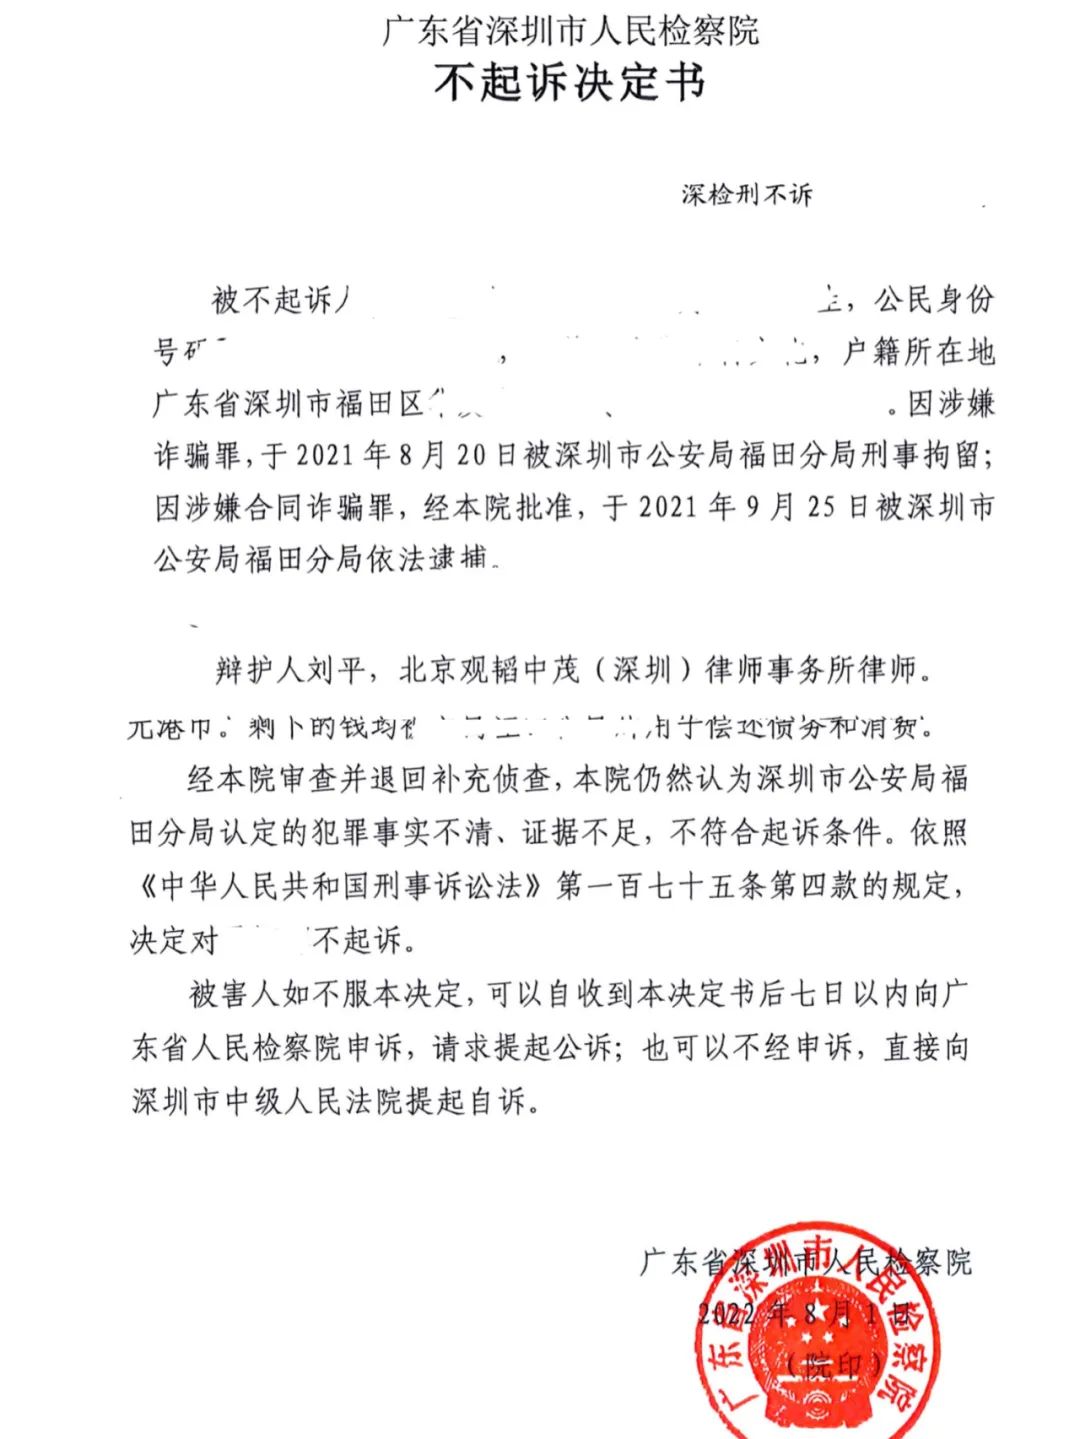 刘平老师团队成功办理一起涉案1亿元合同诈骗罪无罪不不起诉案